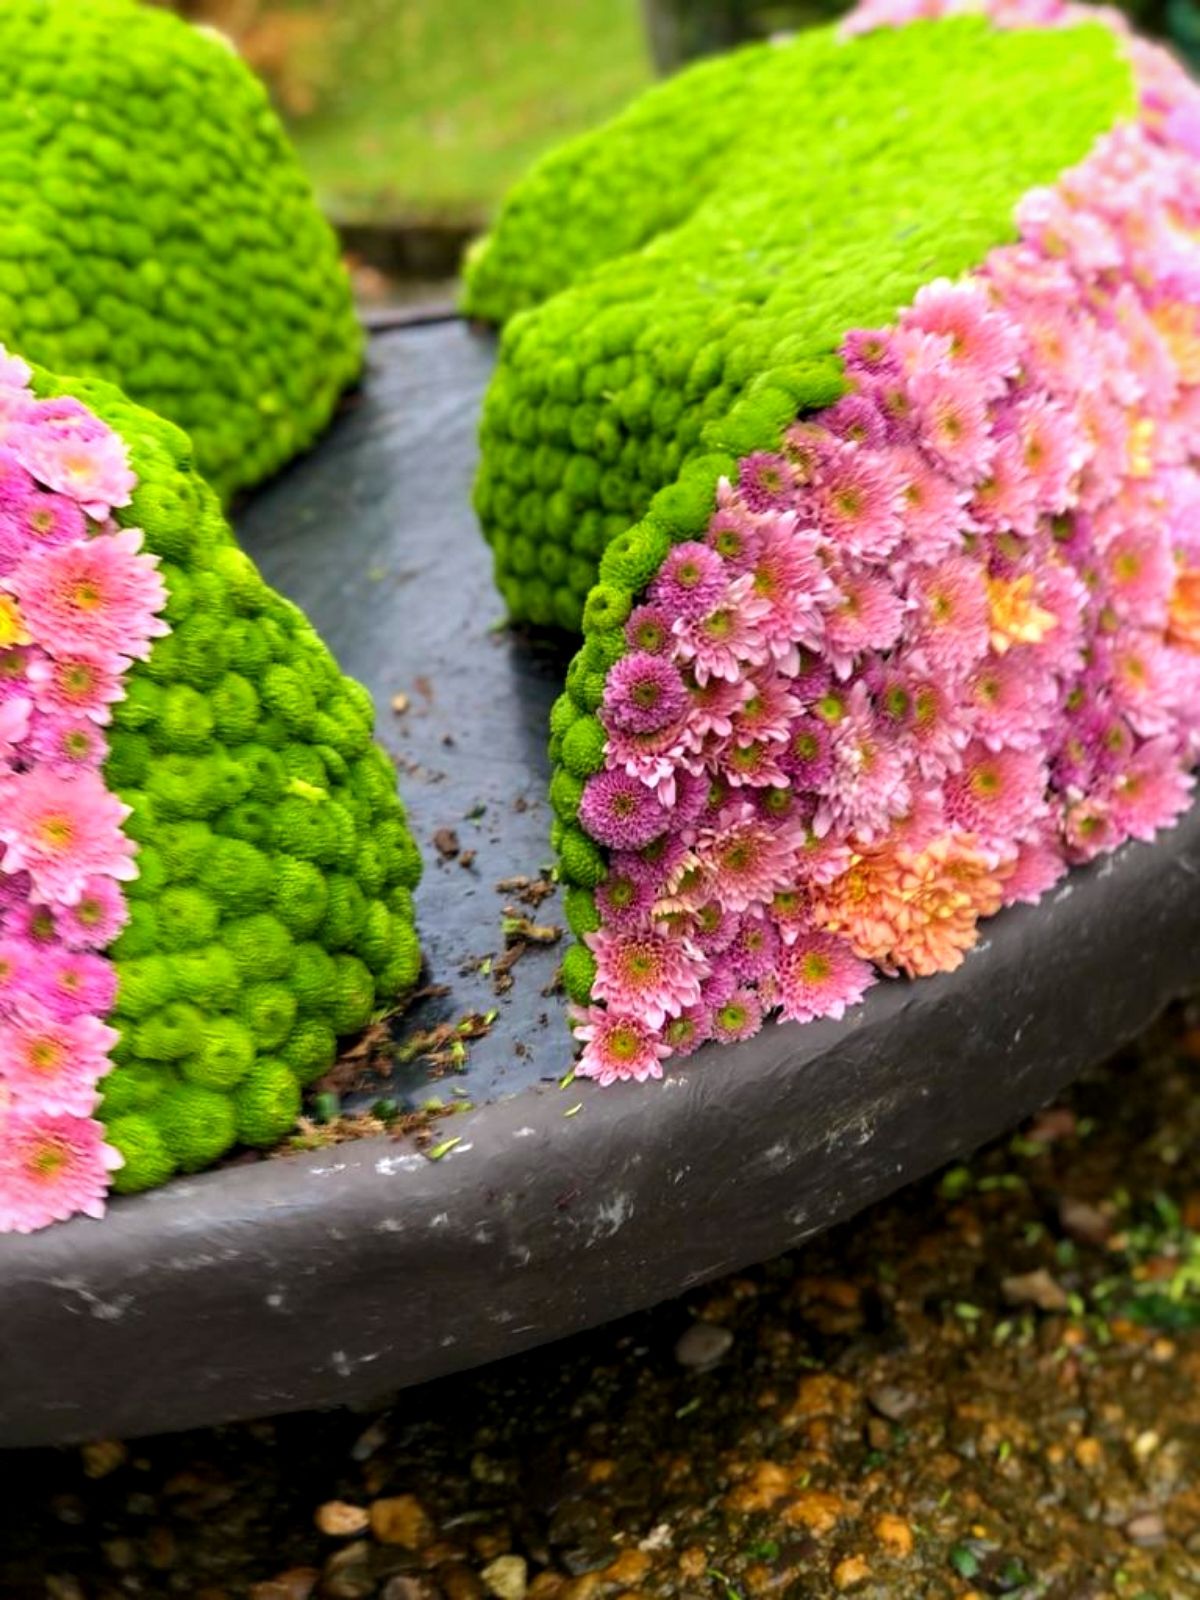 Design Japanese Garden Haiku in bloom by Liz Rosales flowers Just Chrys - Blog on Thursd (1)